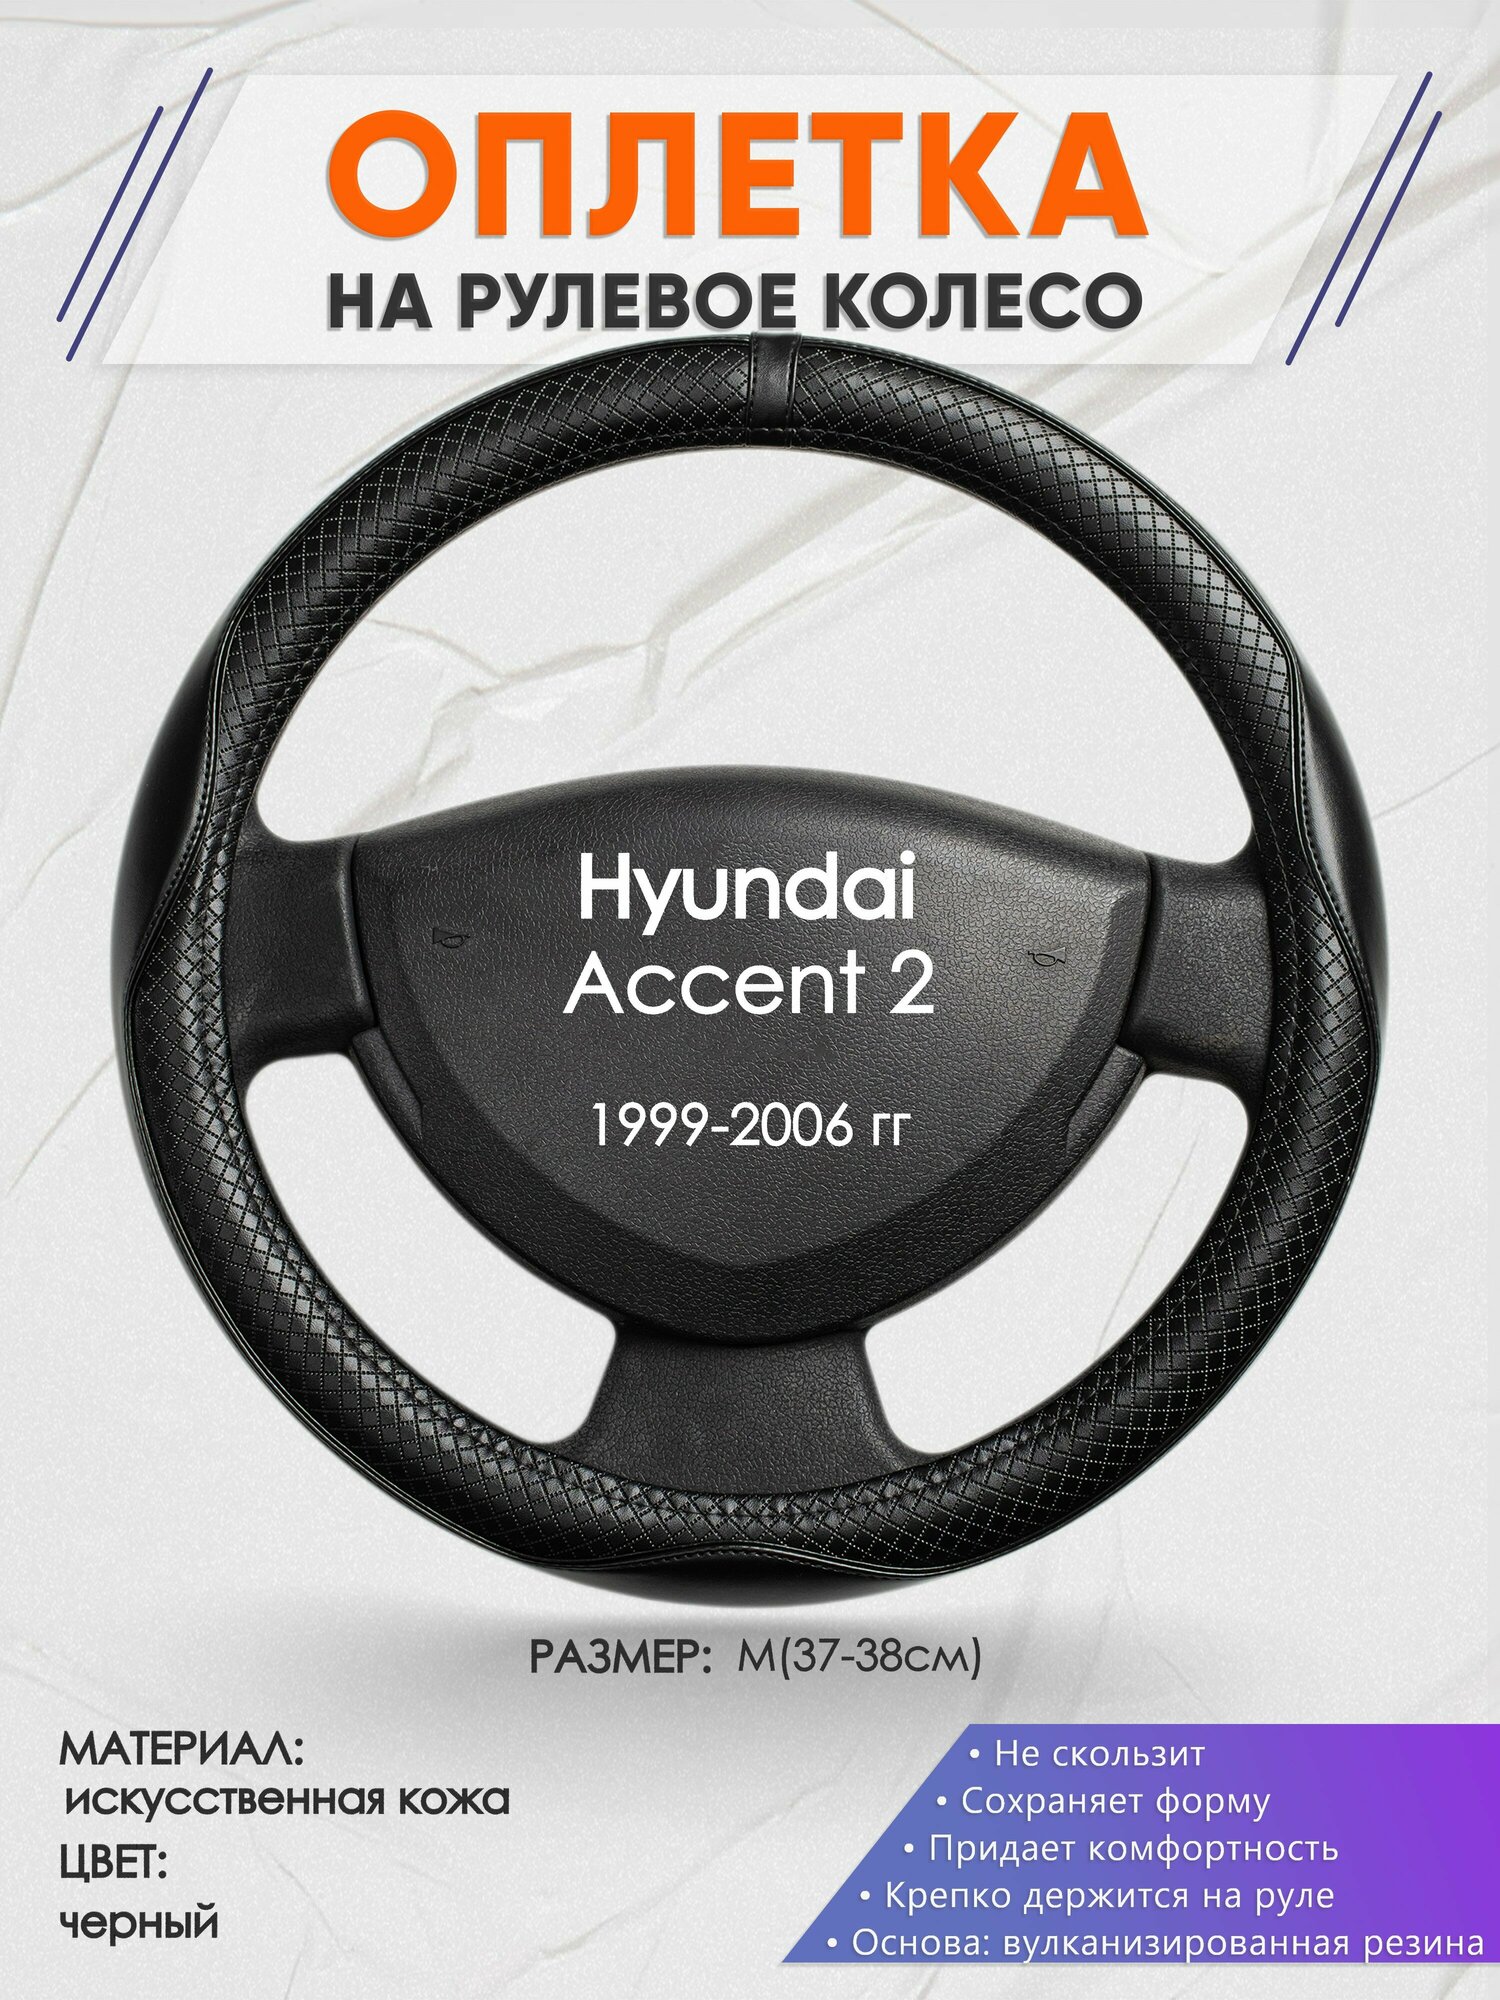 Оплетка на руль для Hyundai Accent 2(Хендай Акцент 2) 1999-2006, M(37-38см), Искусственная кожа 87